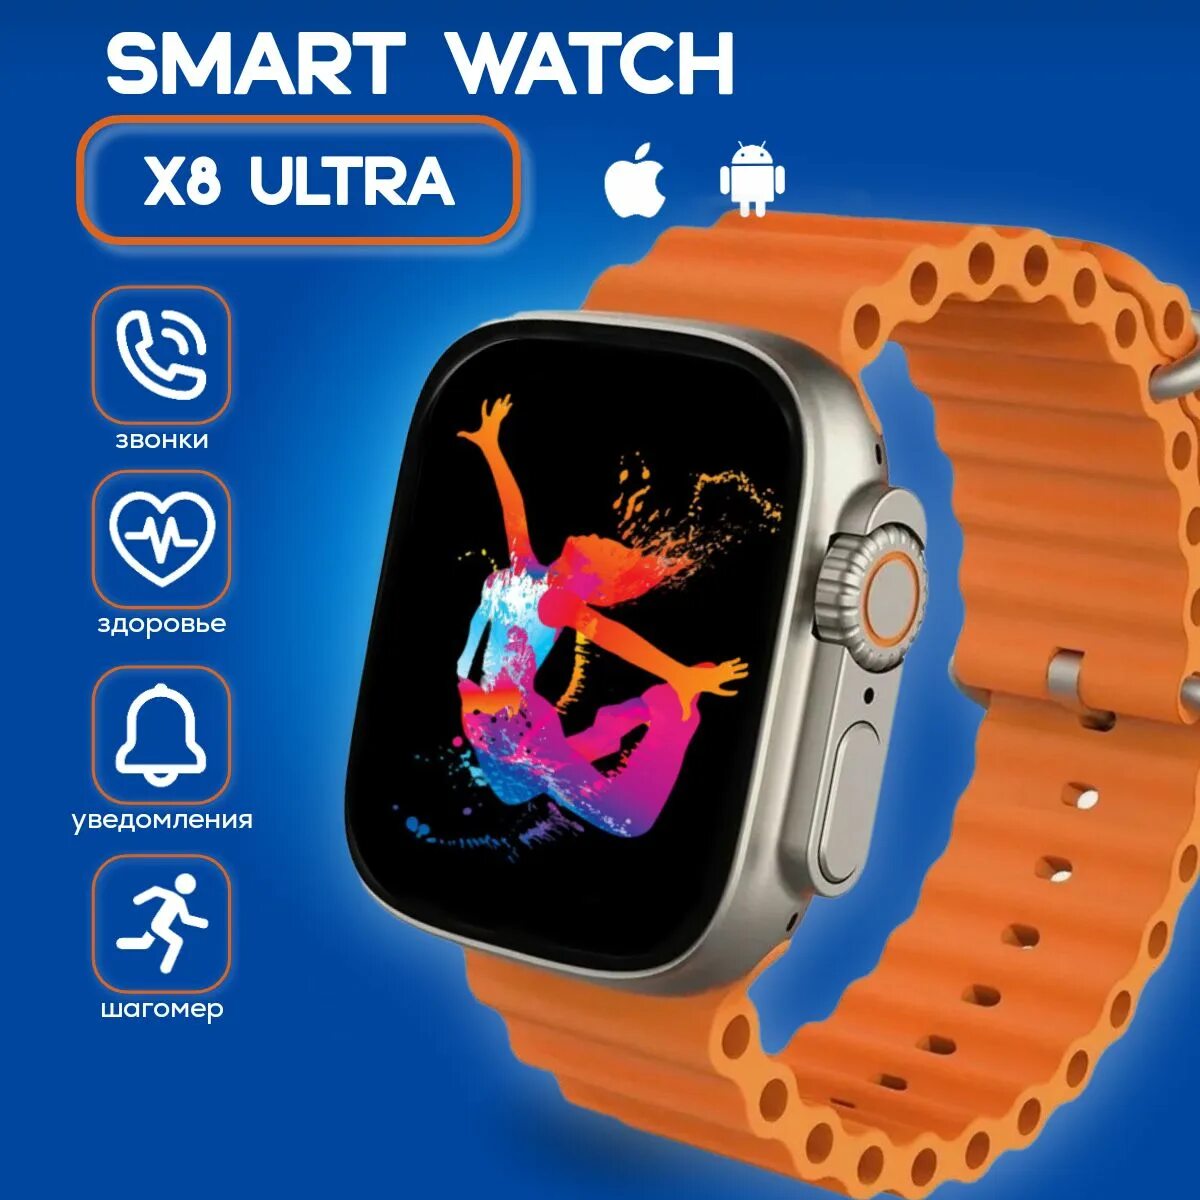 Часы x8 отзывы. X8 Ultra Smart watch. SMARTWATCH 8 Ultra. Смарт часы x8 Plus Ultra. Умные часы x8 Ultra смарт часы.